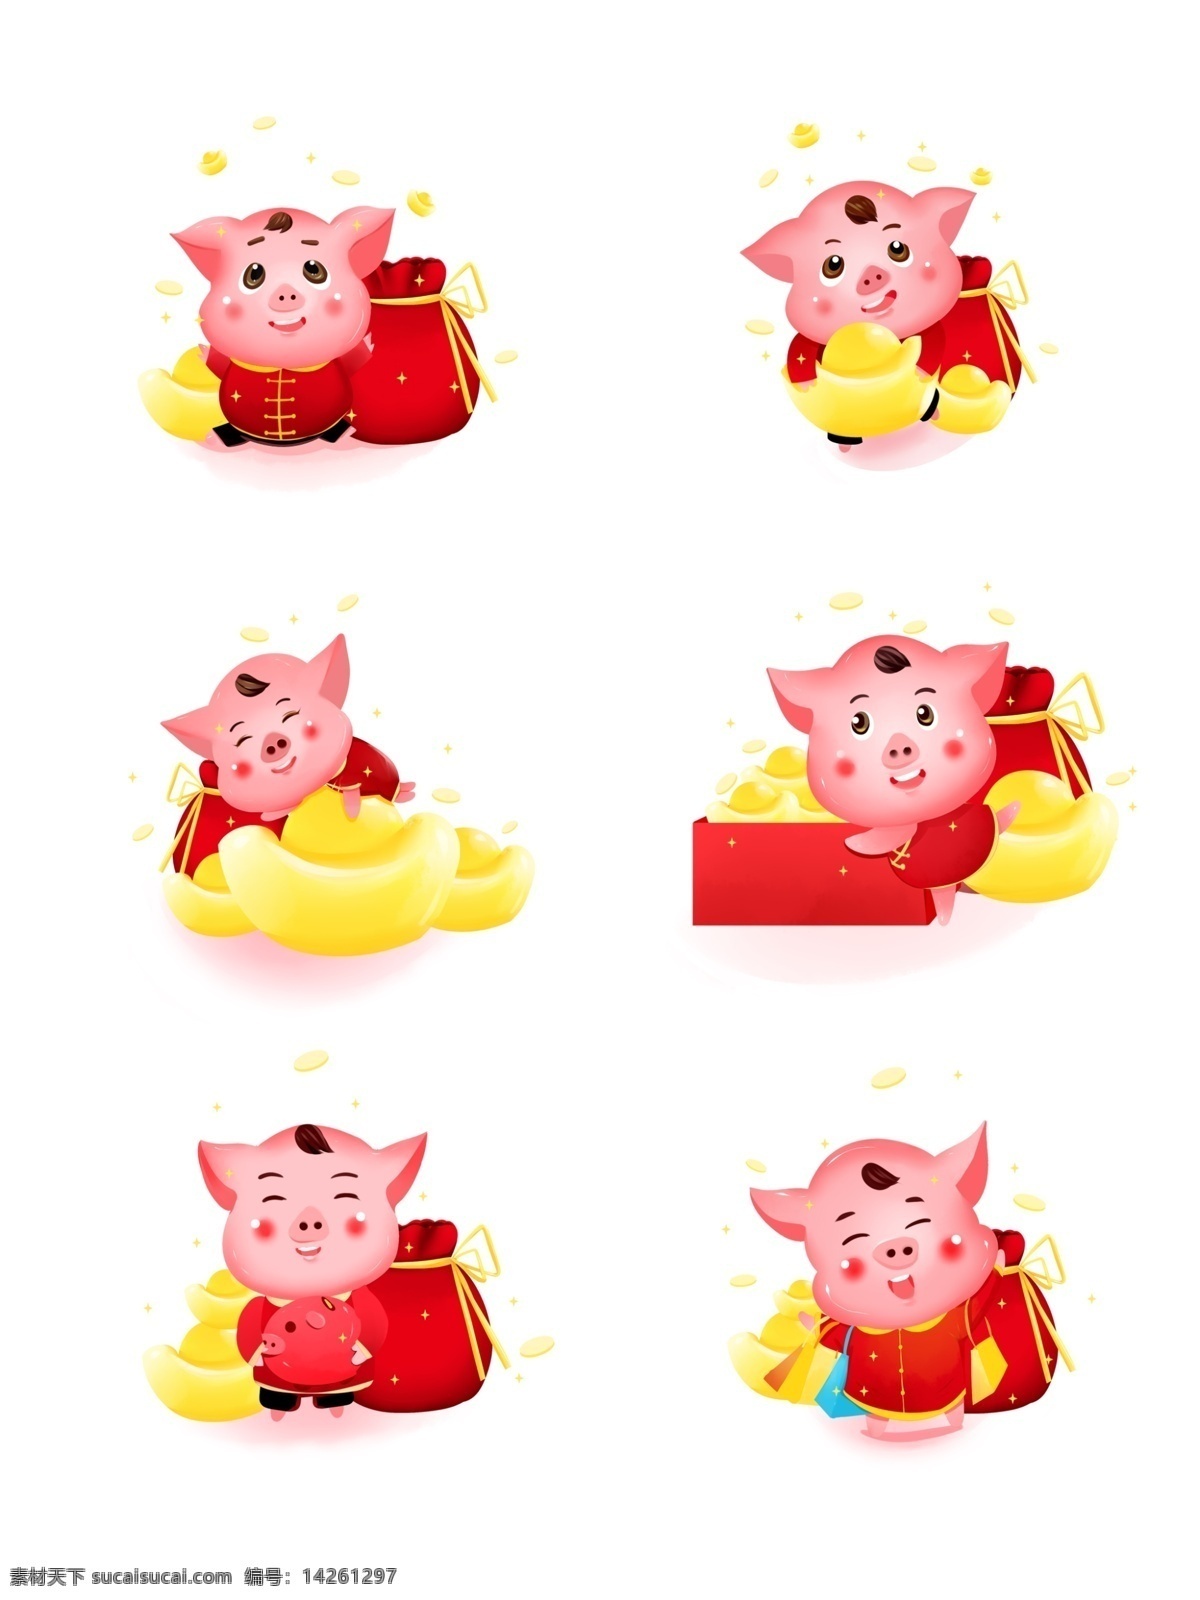 新年 立体 猪 ip 发财 红包 福 袋 促销 金币 购物 商场 元宝 猪年 立体猪 卡通猪 吉祥 猪ip 新春